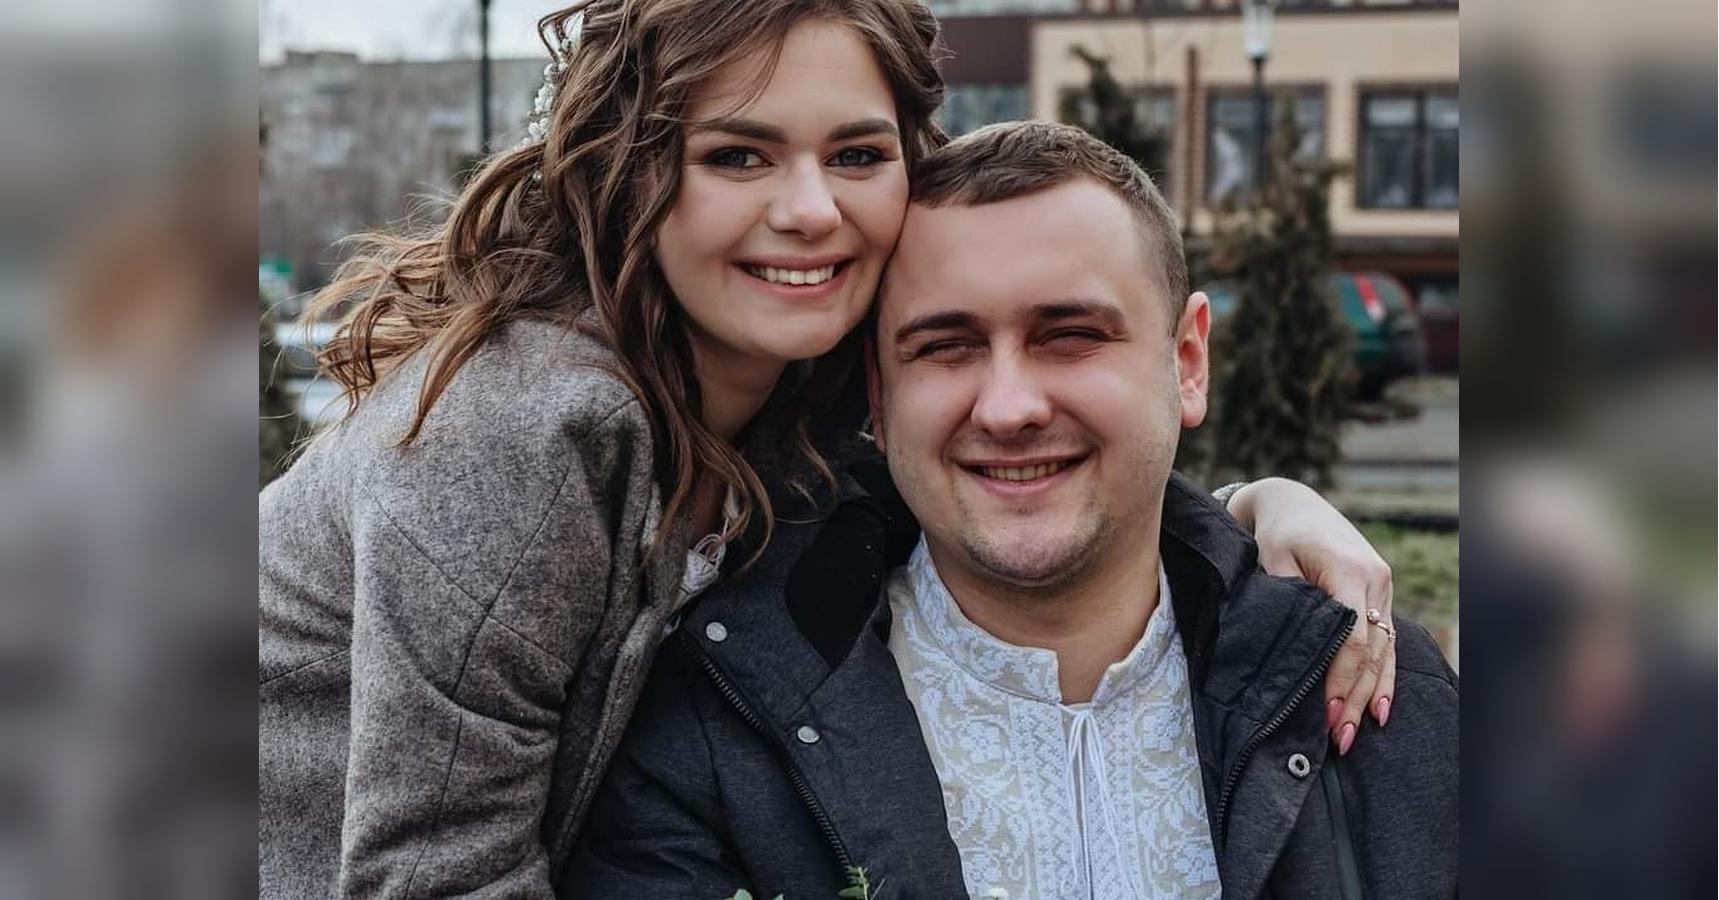 Ищу мужчину для секса Ковель: объявления интим знакомств на ОгоСекс Украина